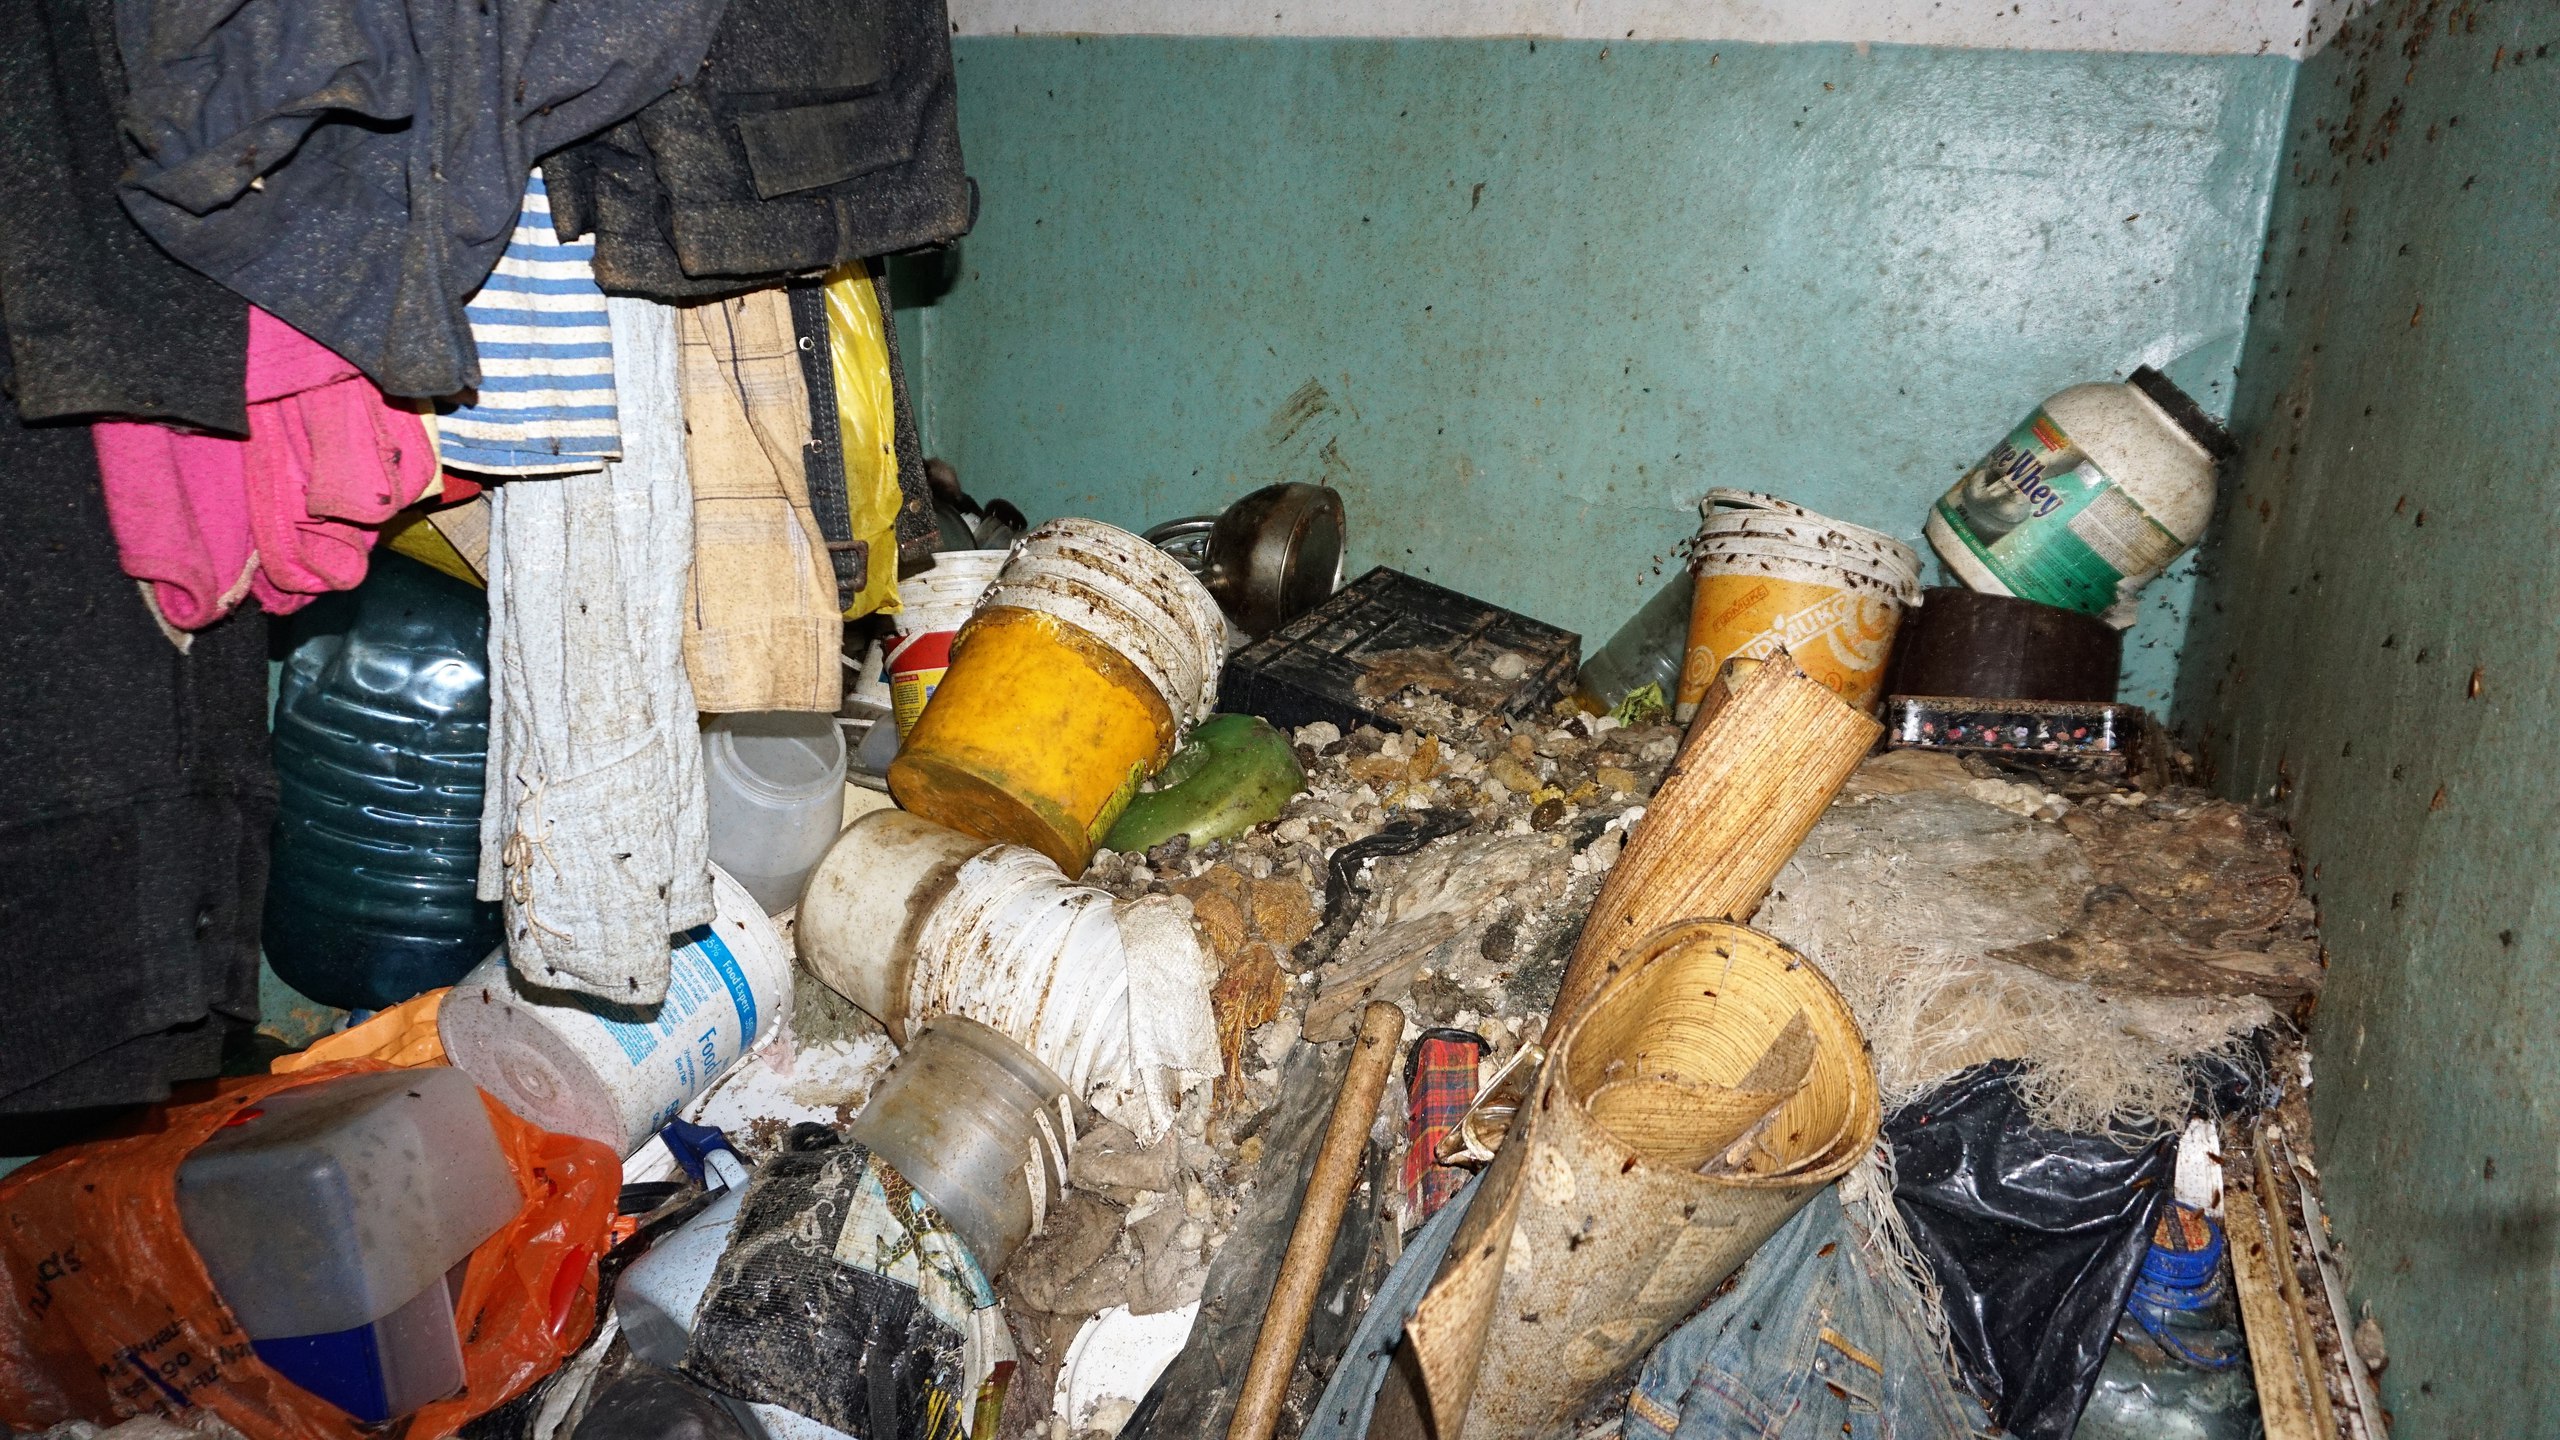  «Все завалено мусором, на стенах мухи и тараканы». Газовики, приставы и полицейские спустя полгода попали в квартиру, из-за которой жильцы дома сидят без газа. ФОТО - Фото 3